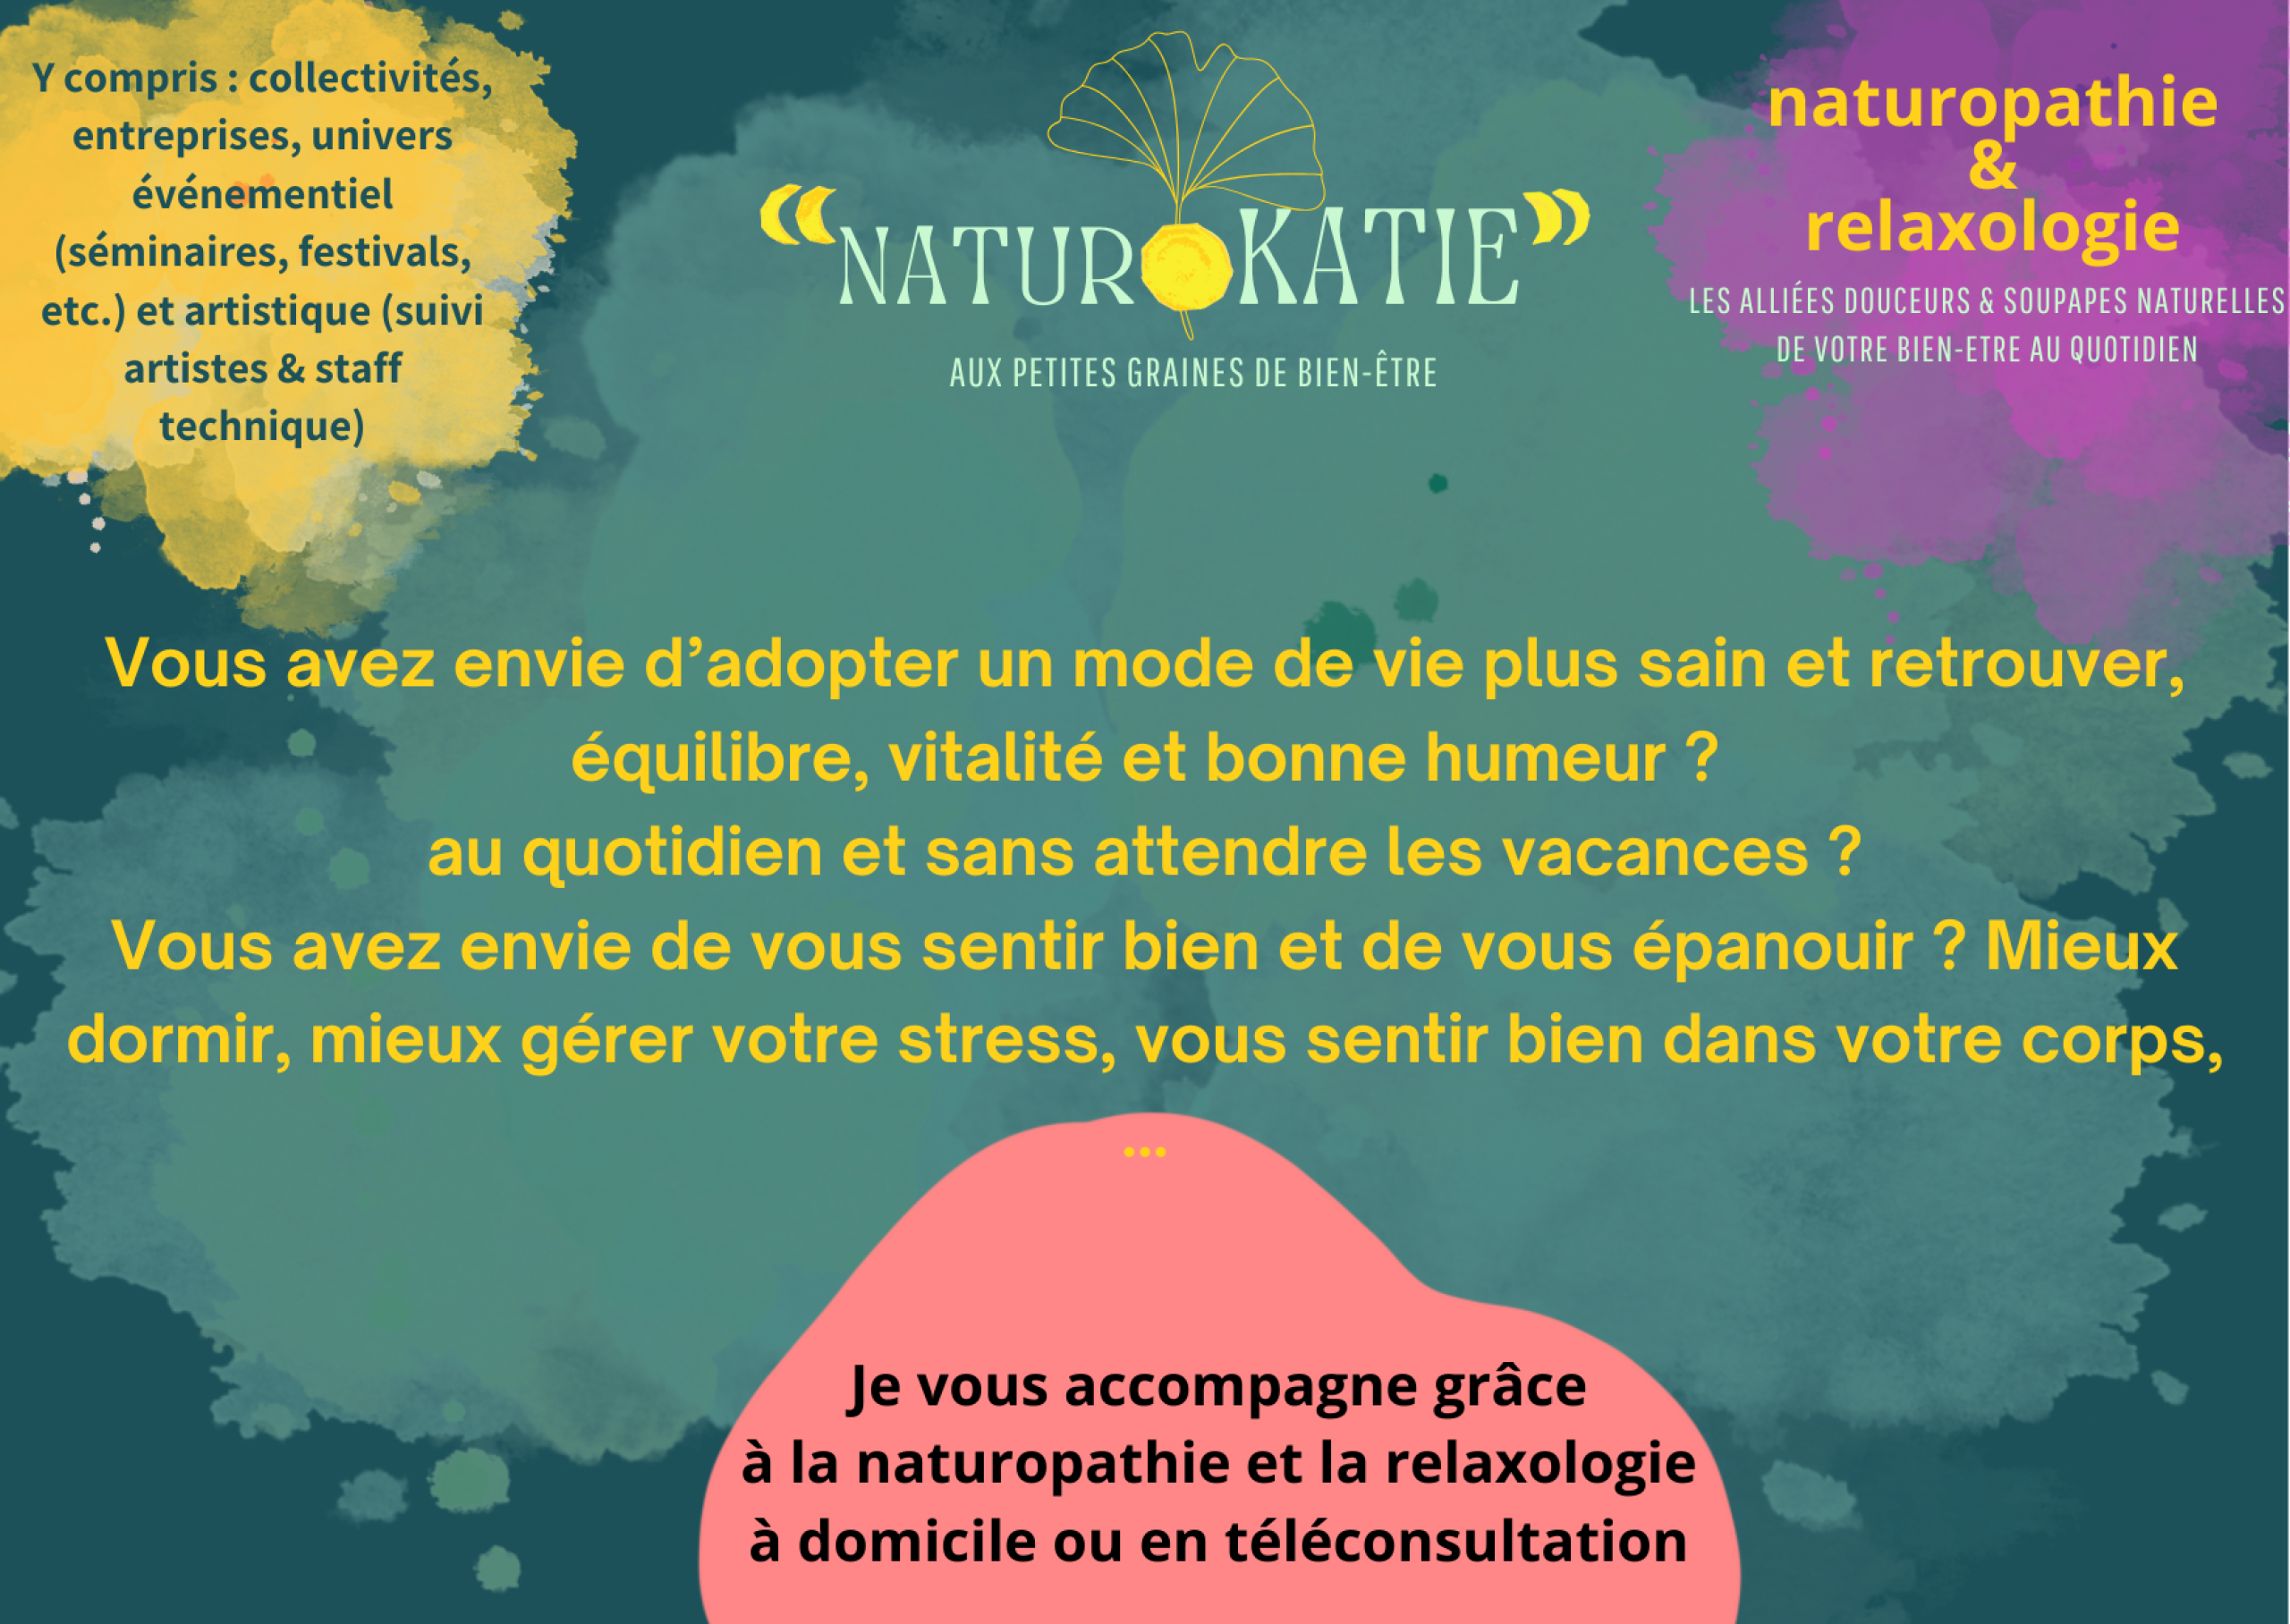 Naturopathie et relaxologie, pour votre bien-être